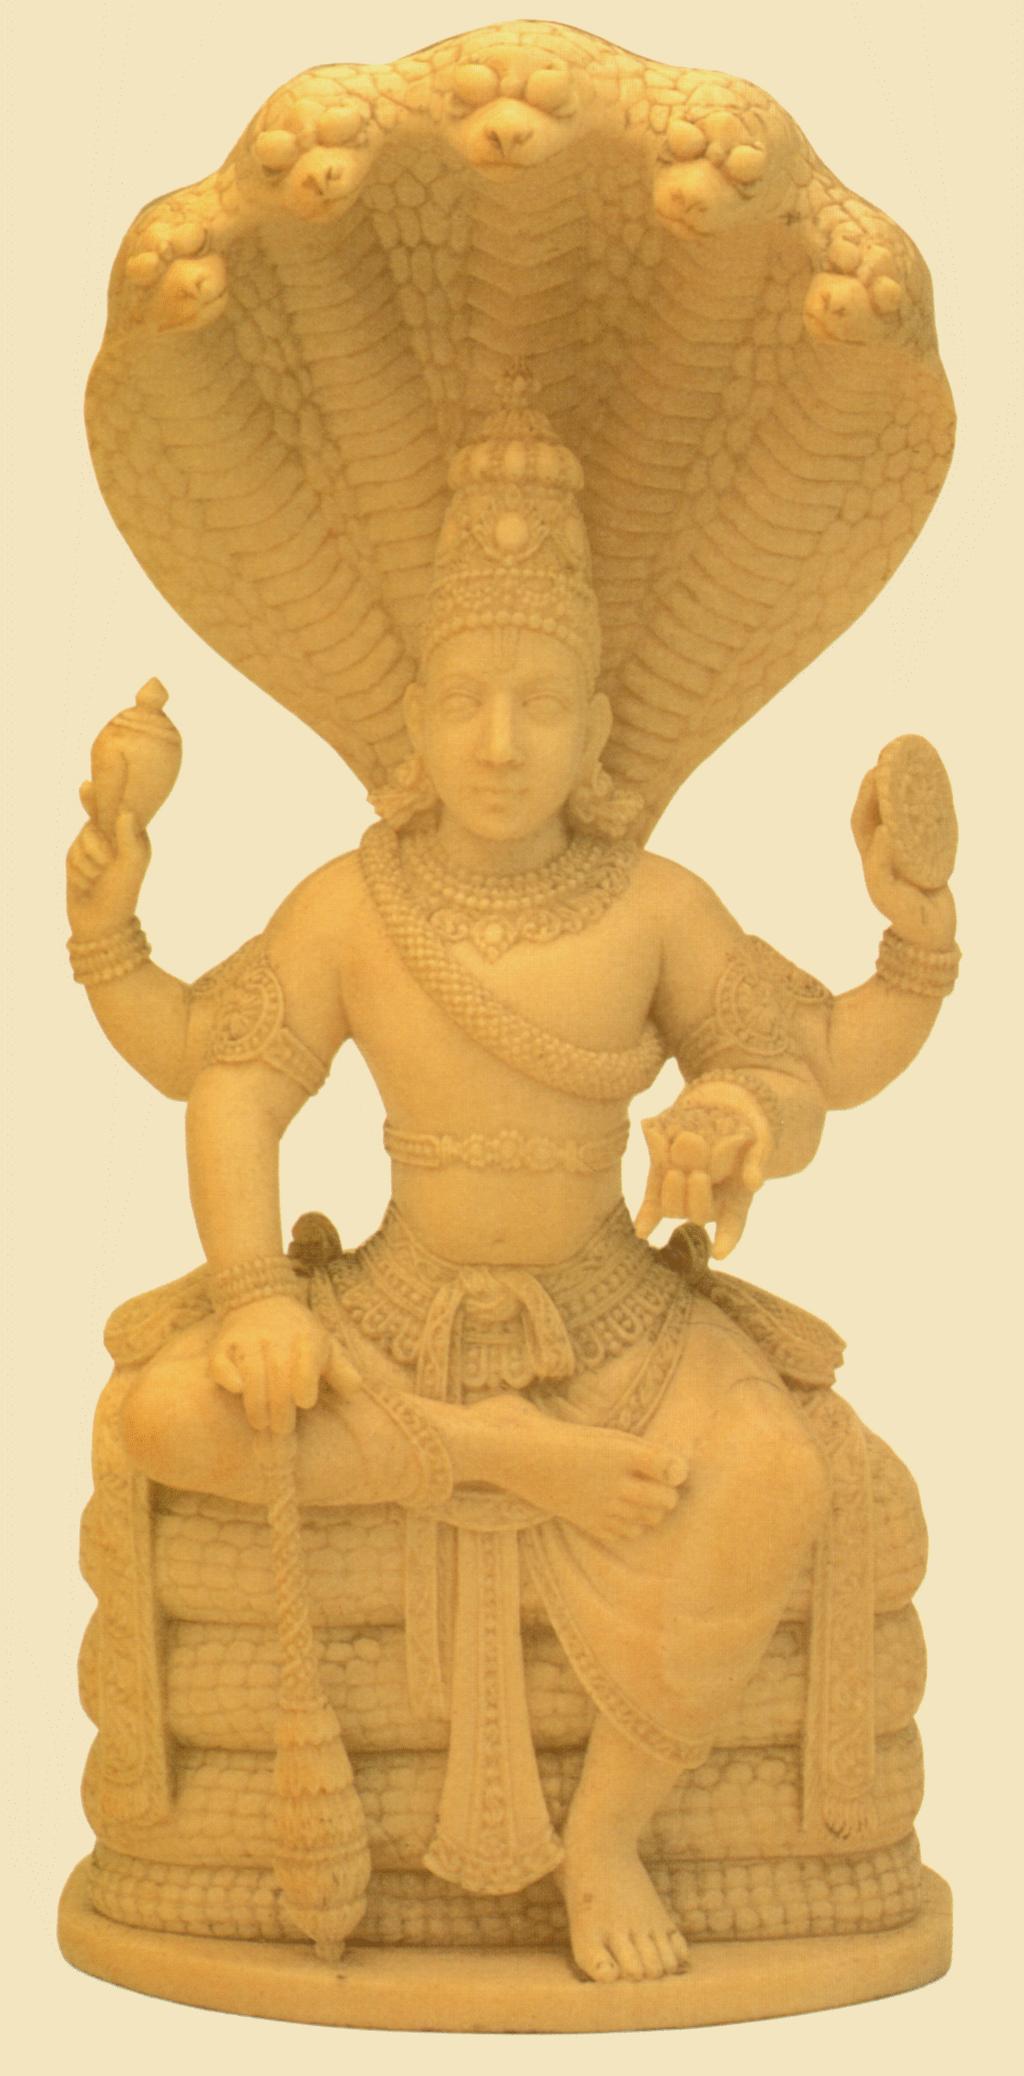 Vishnu v v v the protector of the cosmos Vishnu sitting on the coils of Sesha, the